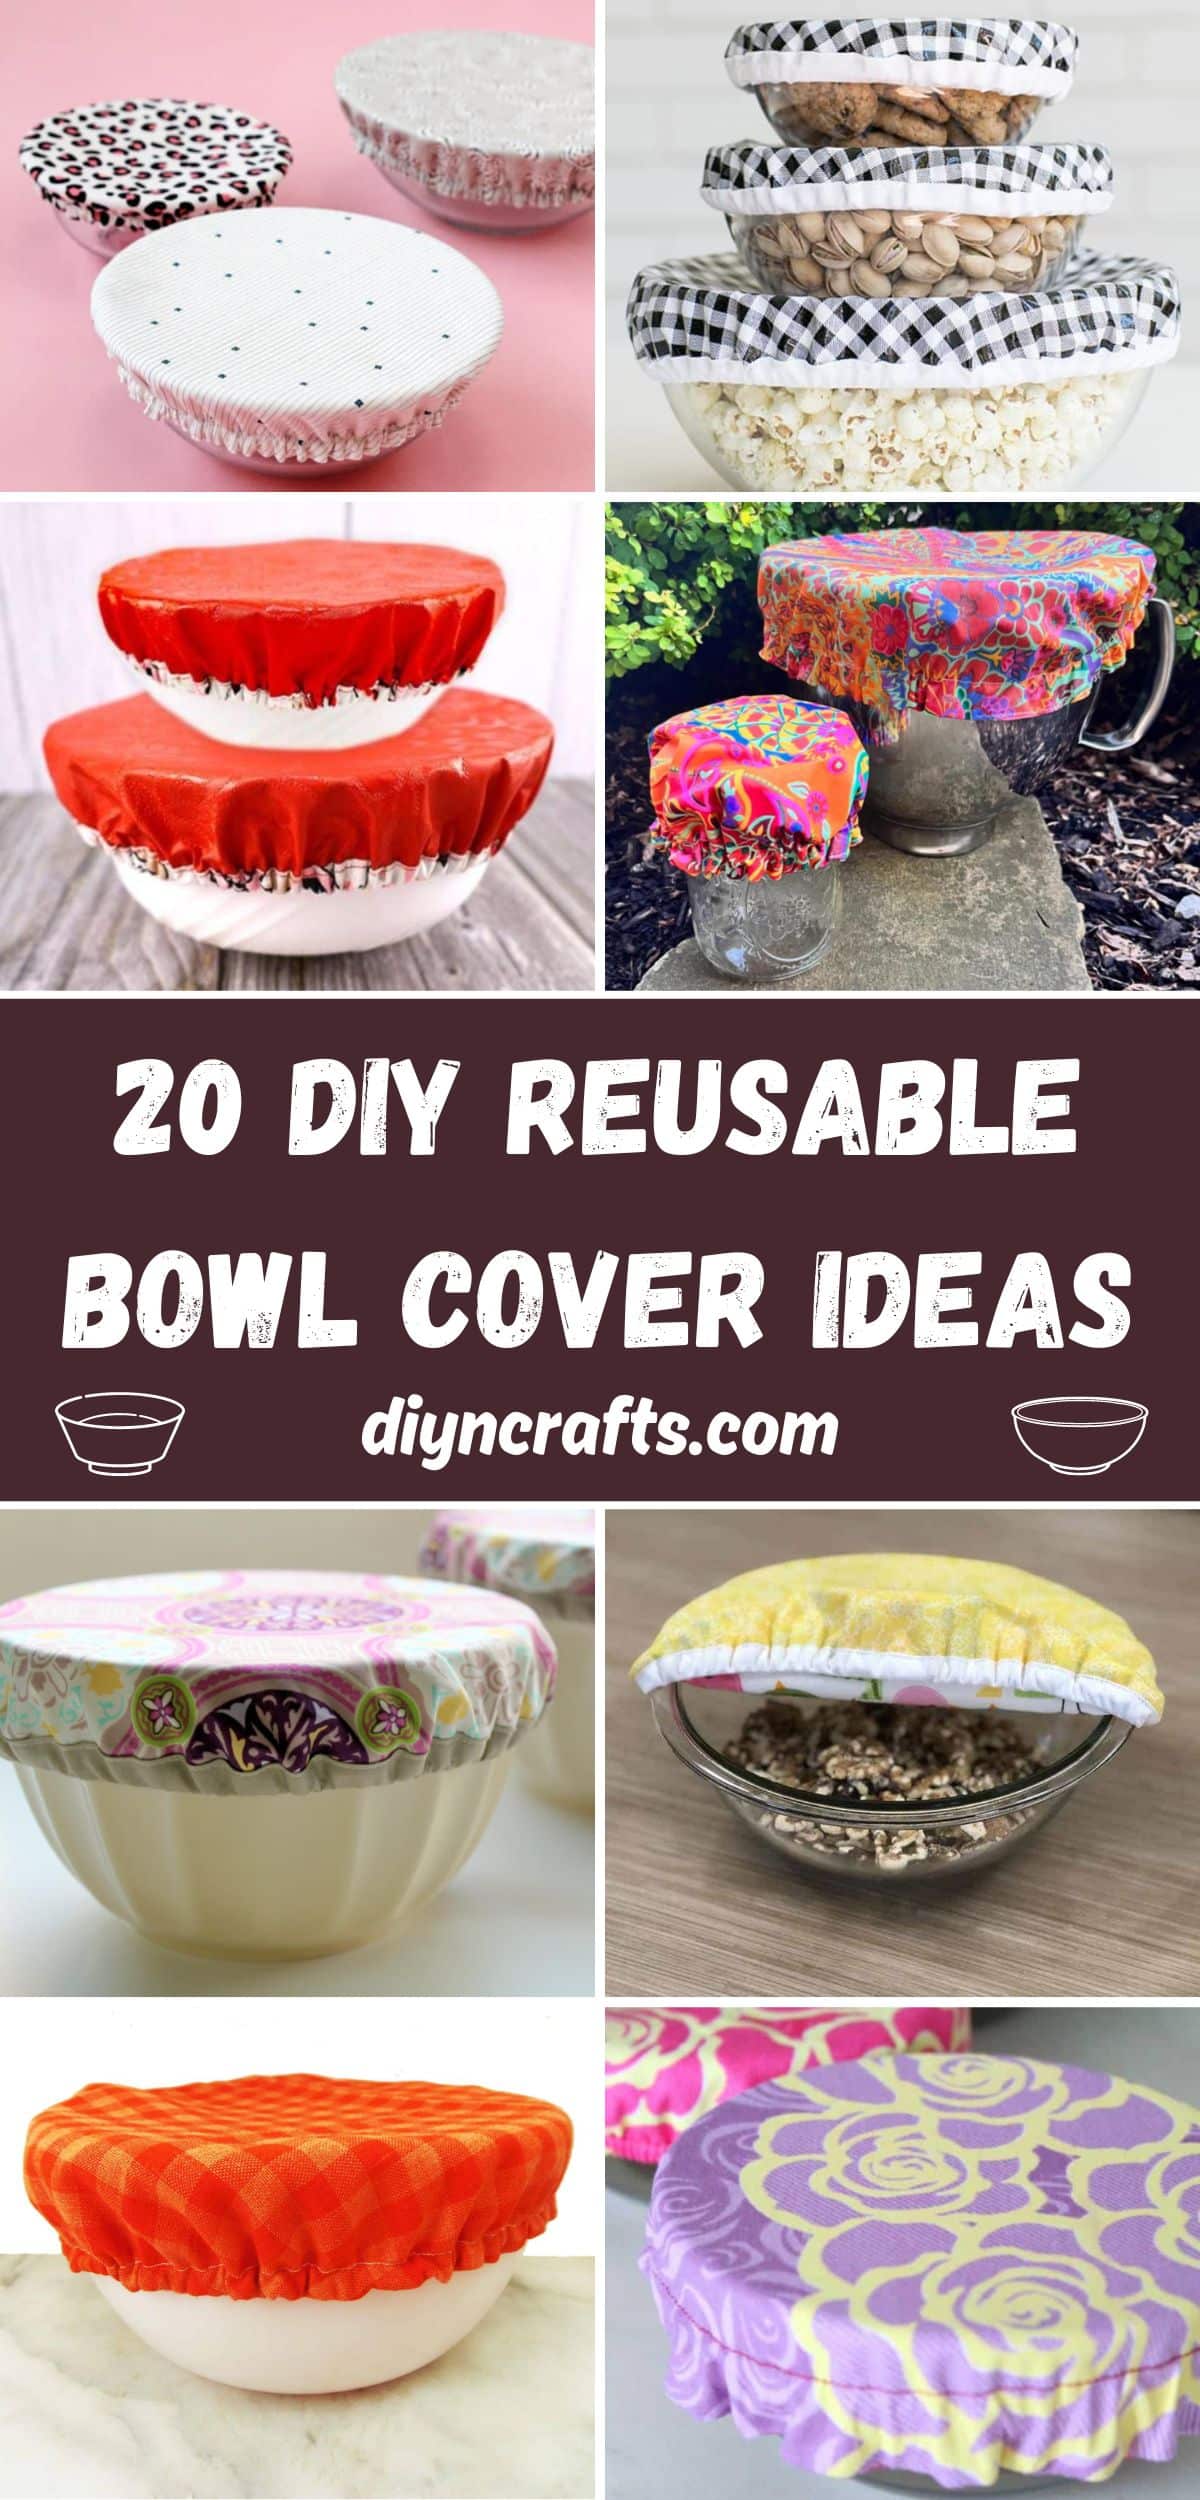 20 DIY Reusable Bowl Cover Ideas collage.